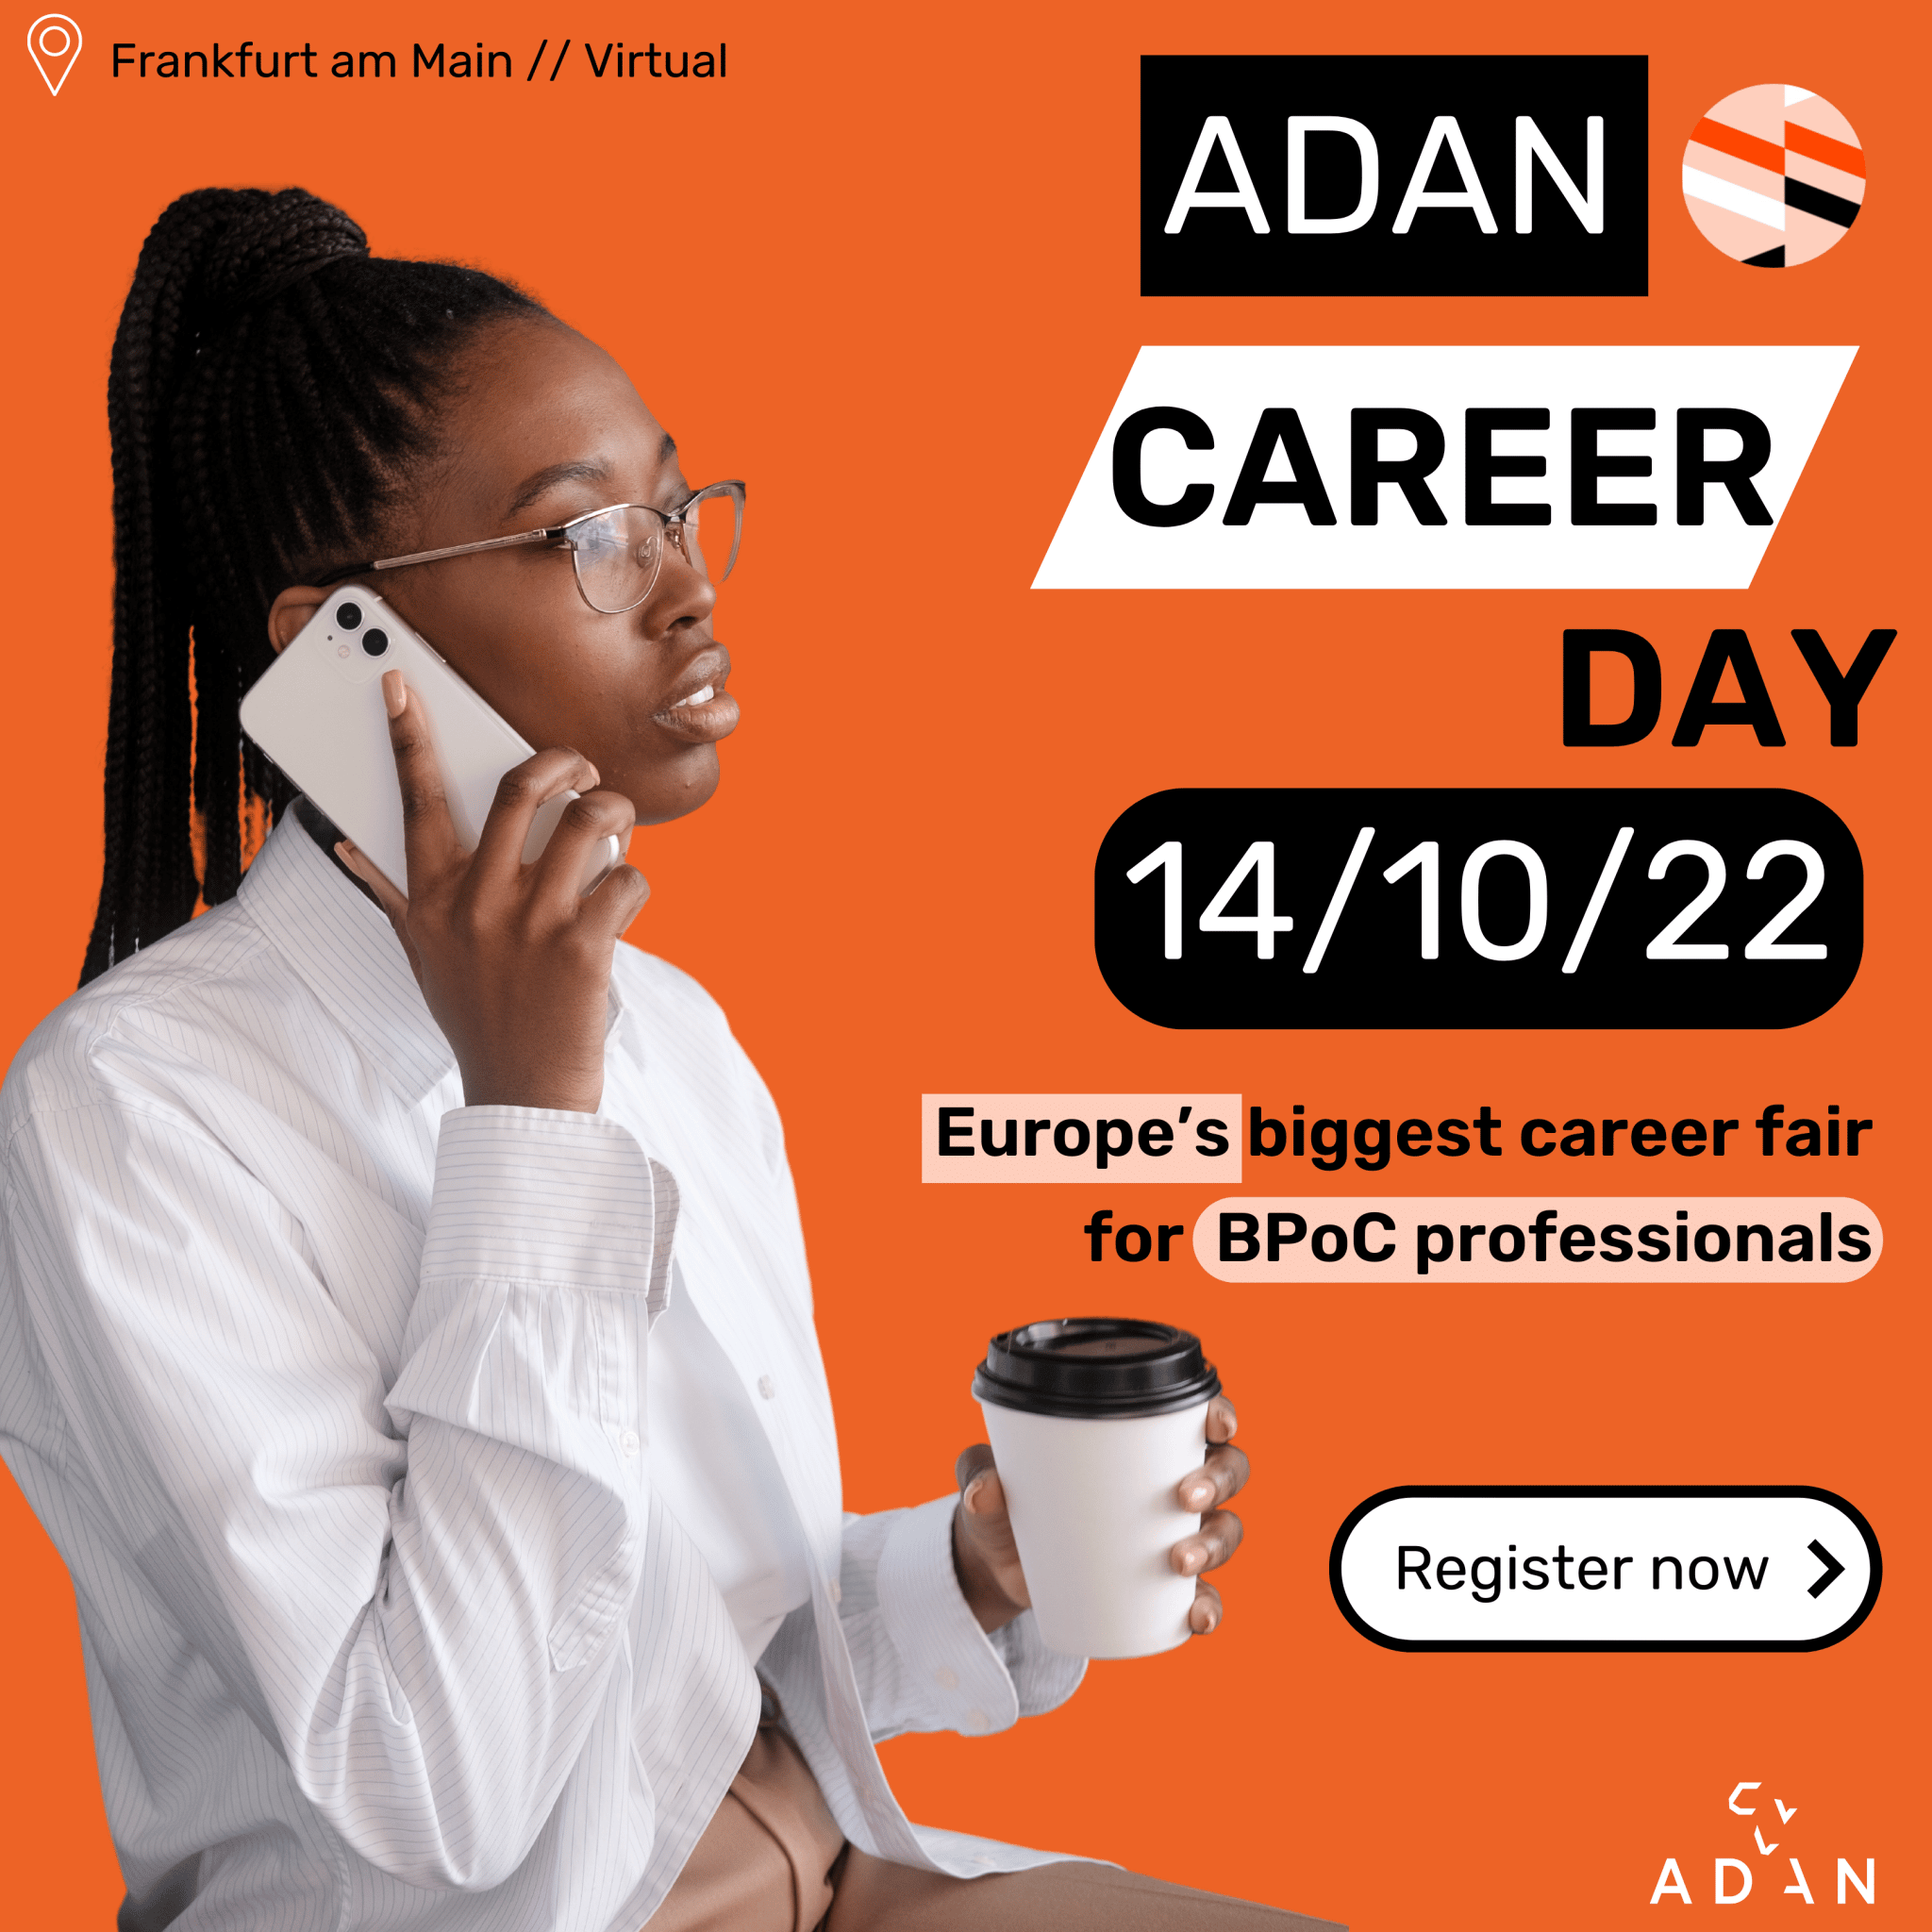 ADAN Career Day 2022